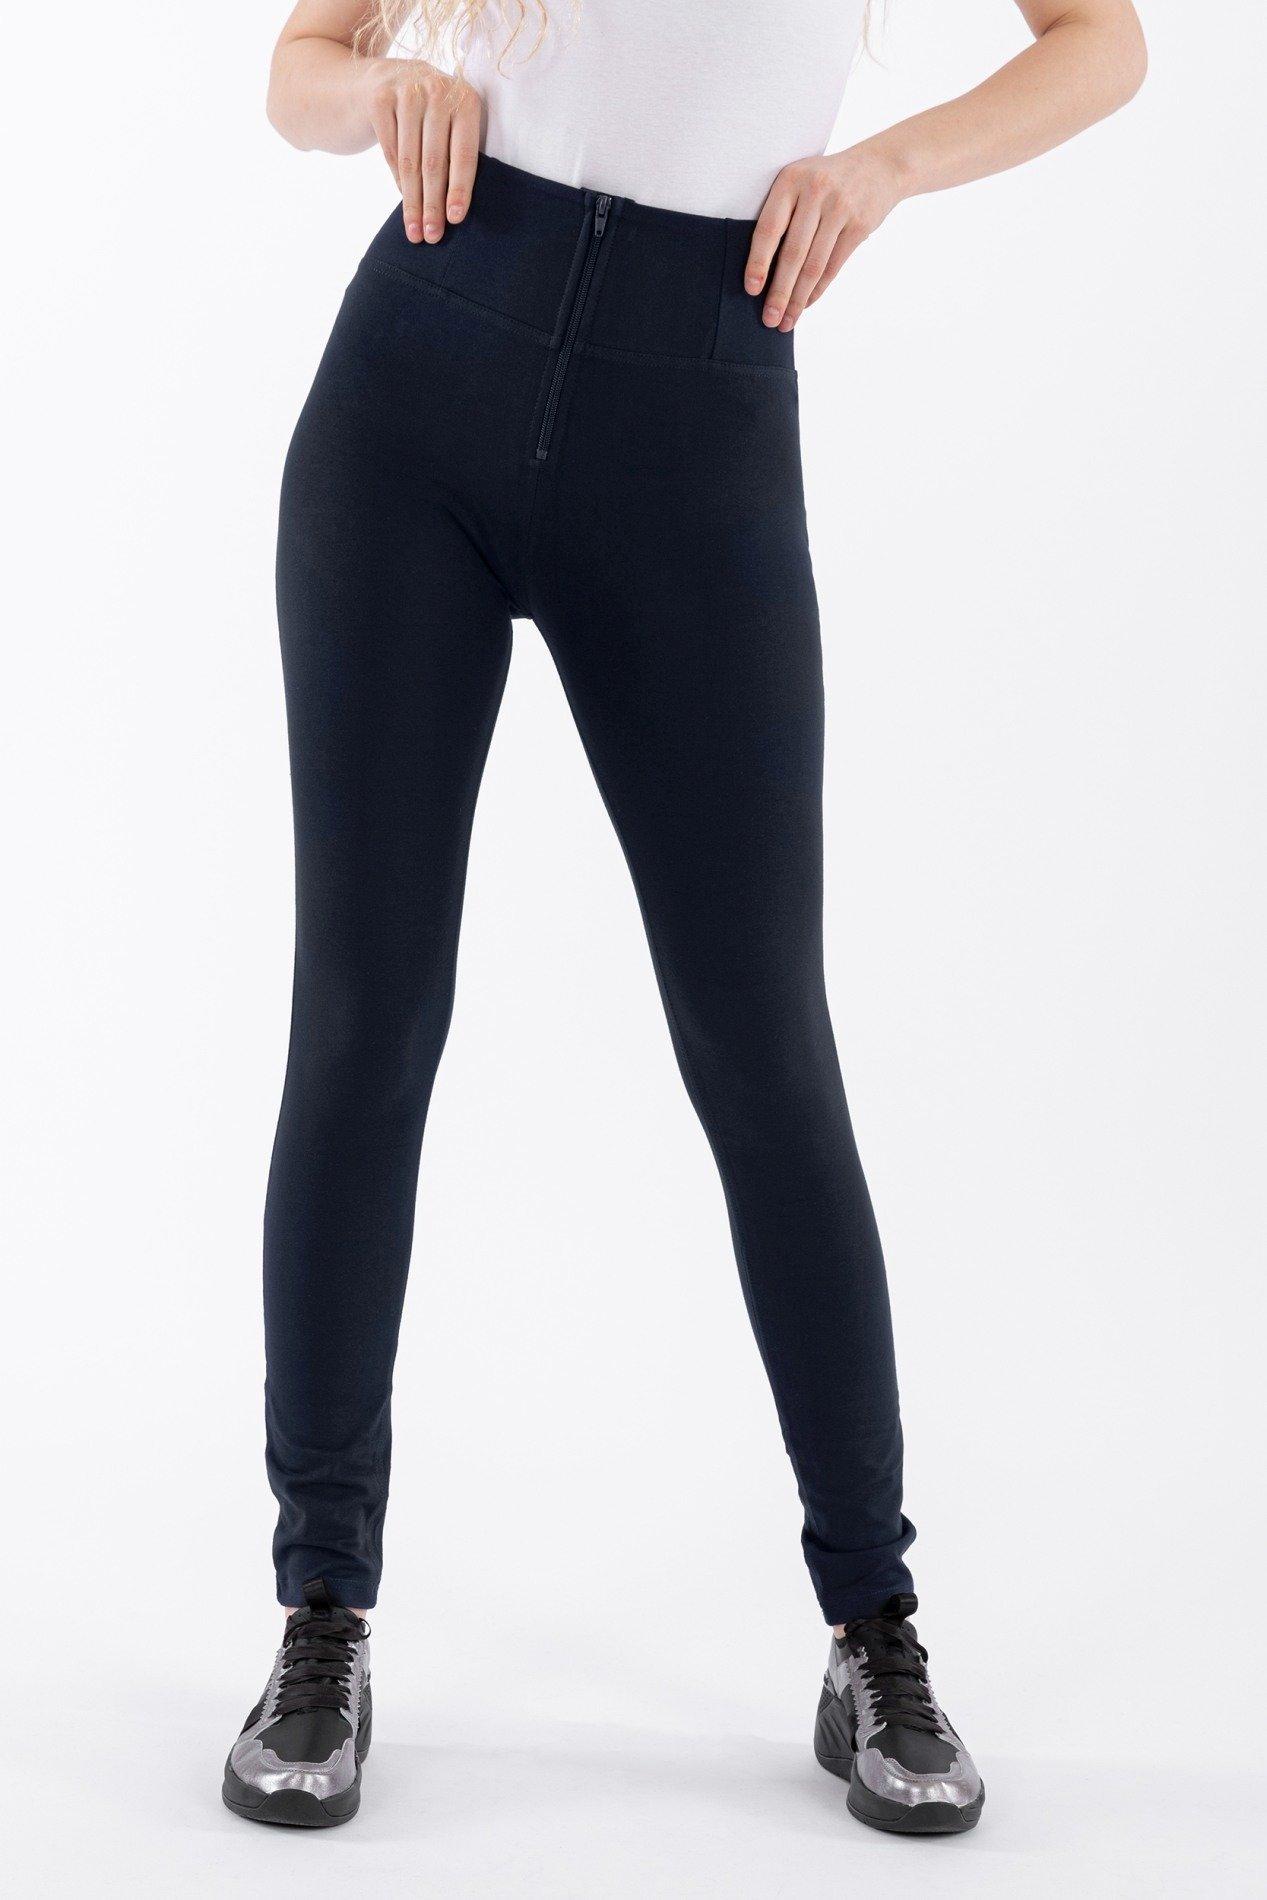 FREDDY  Pantaloni WR.UP® SKINNY a vita alta e lunghezza regolare, in cotone elasticizzato. 